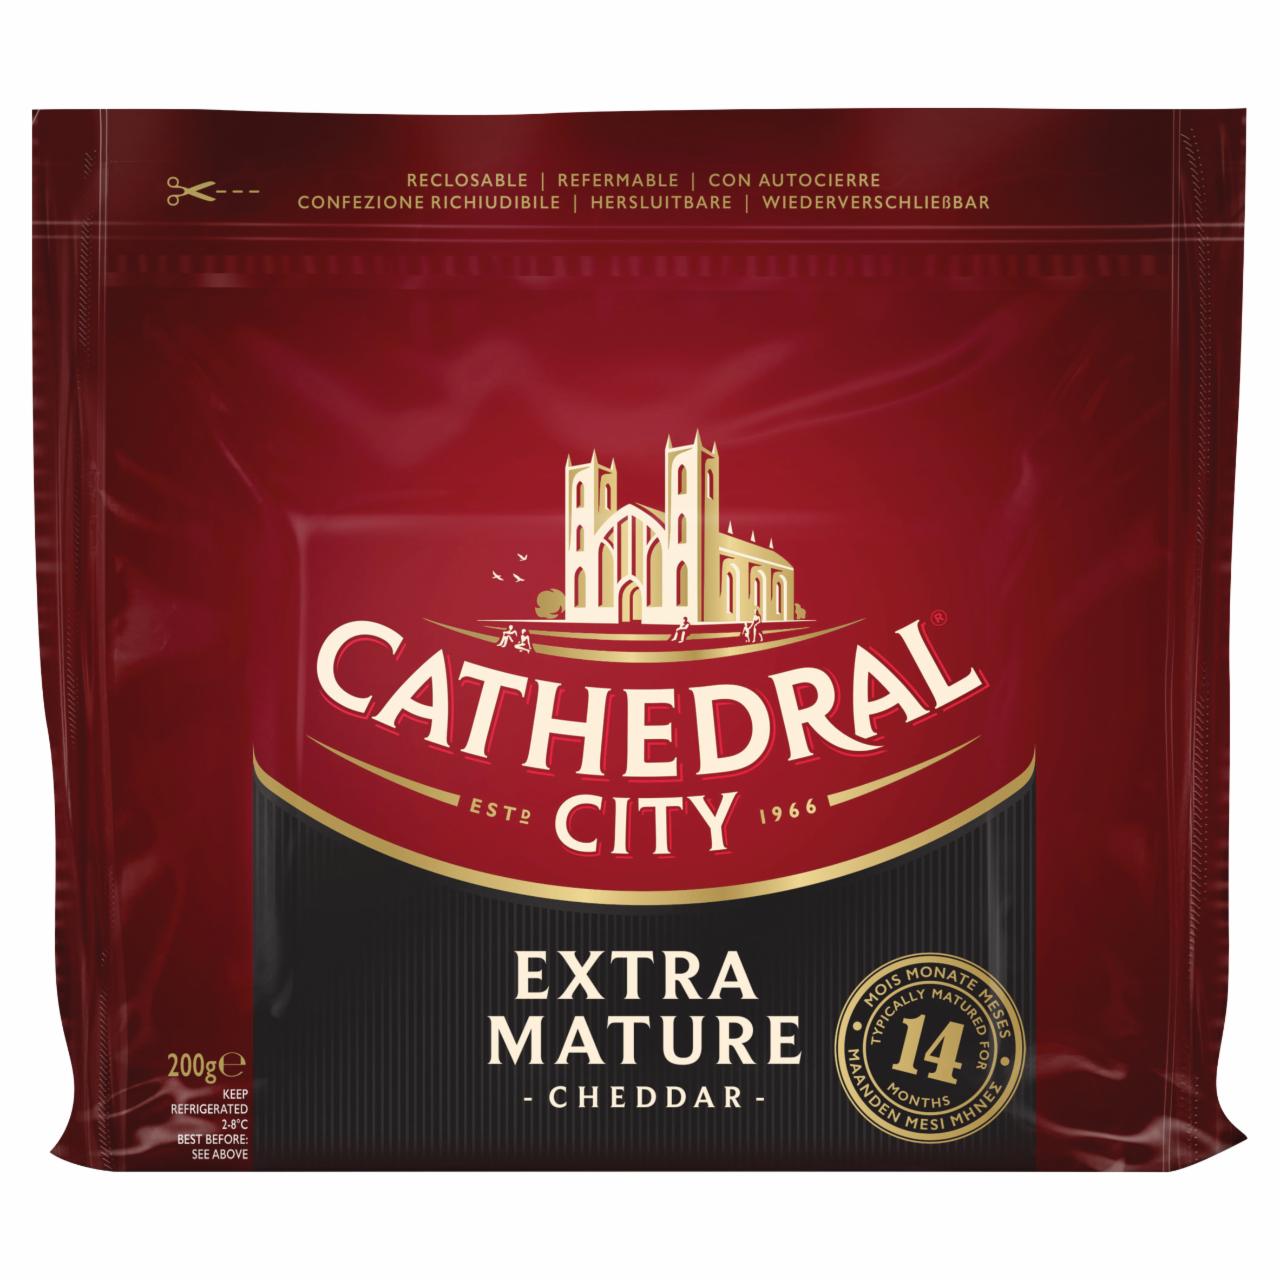 Képek - Cathedral City Cheddar Extra Mature zsíros, kemény sajt 200 g